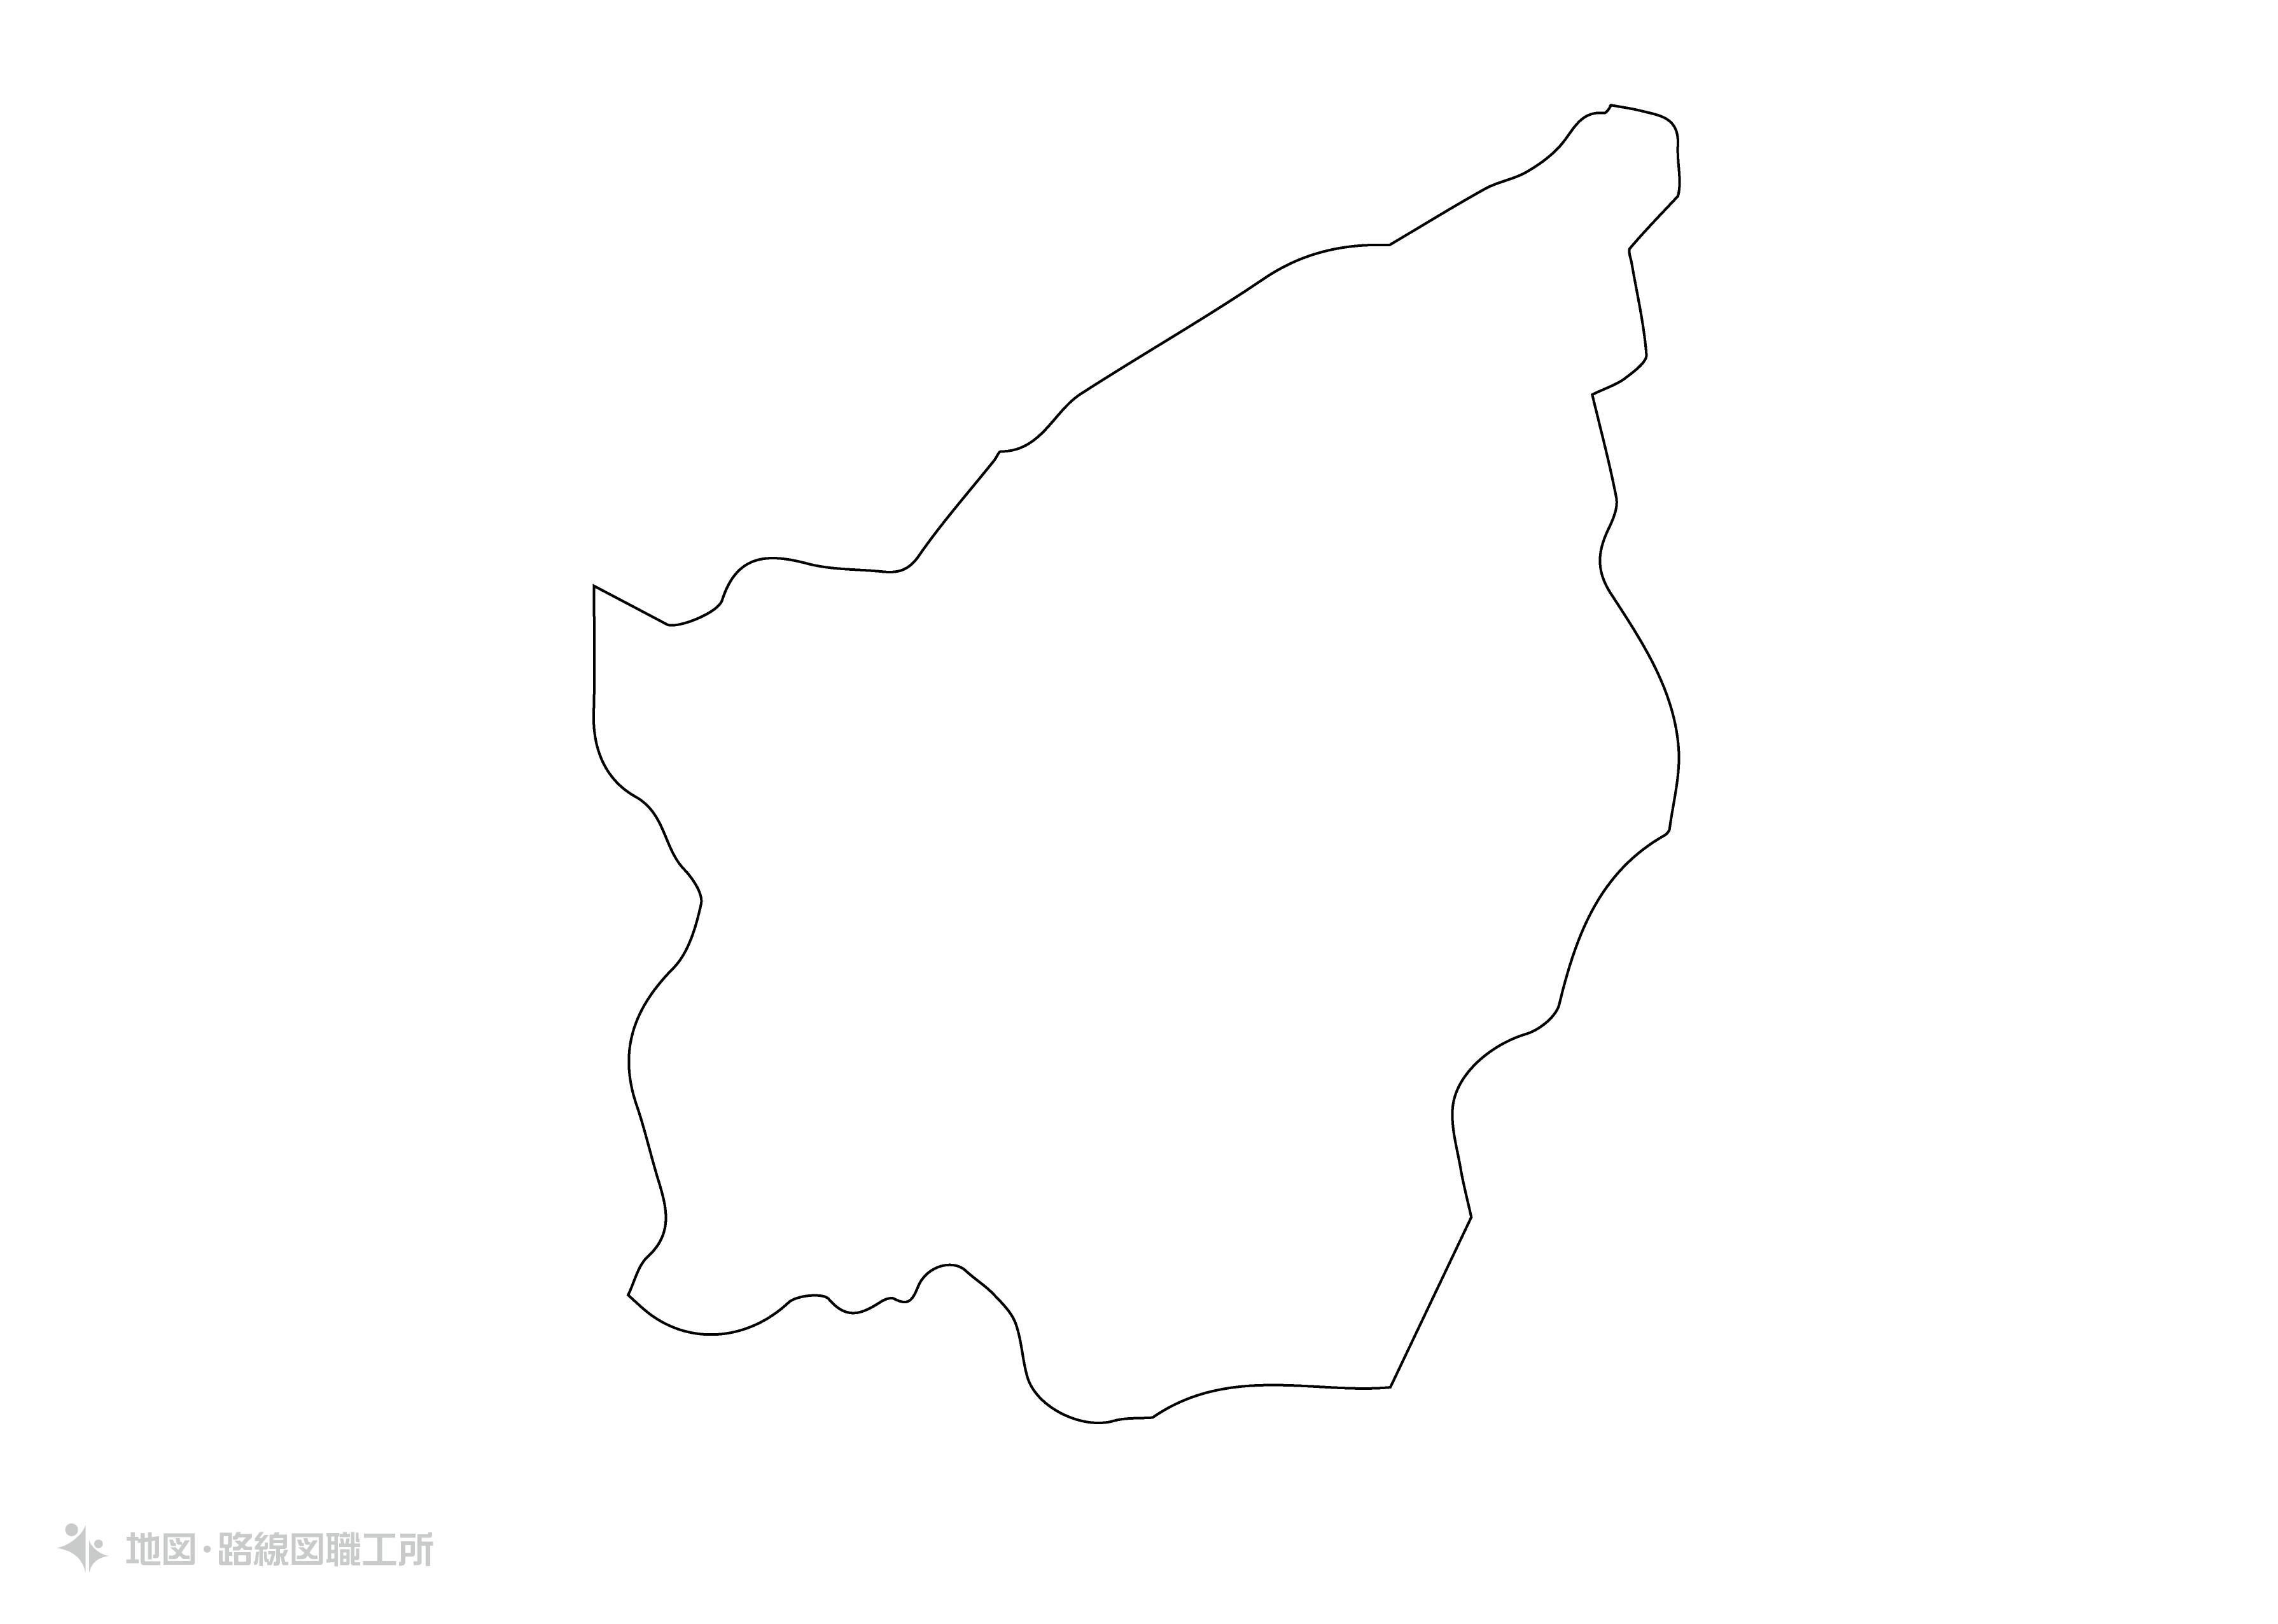 世界の白地図 サンマリノ共和国 republic-of-san-marino map